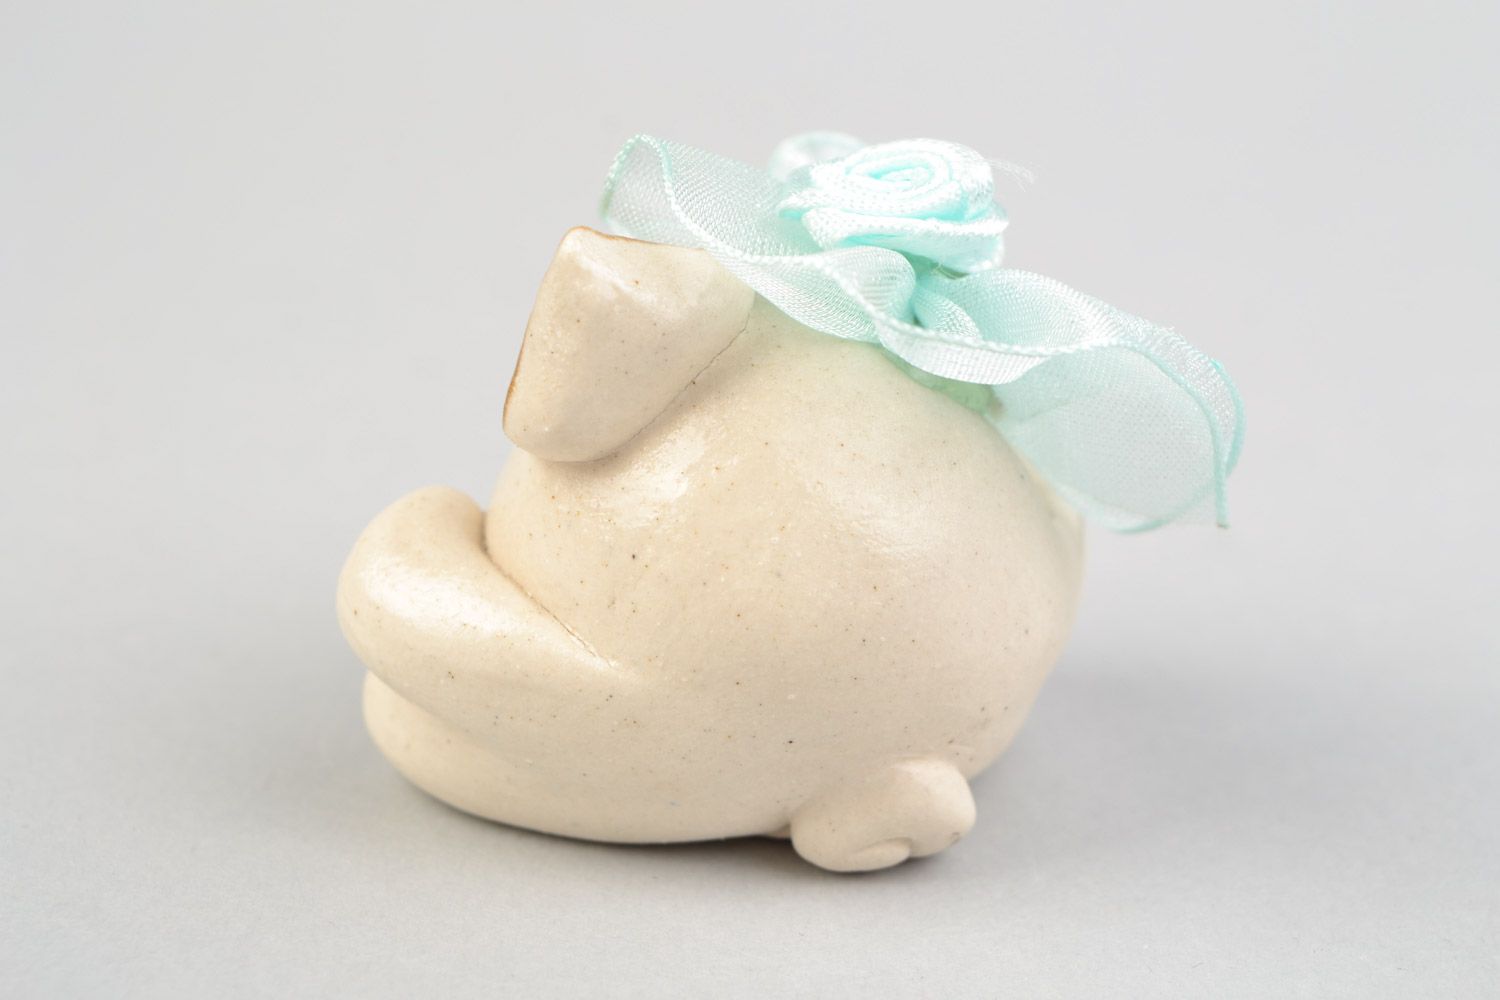 Авторская расписанная глазурью глиняная фигурка свинки с цветком ручной работы фото 5